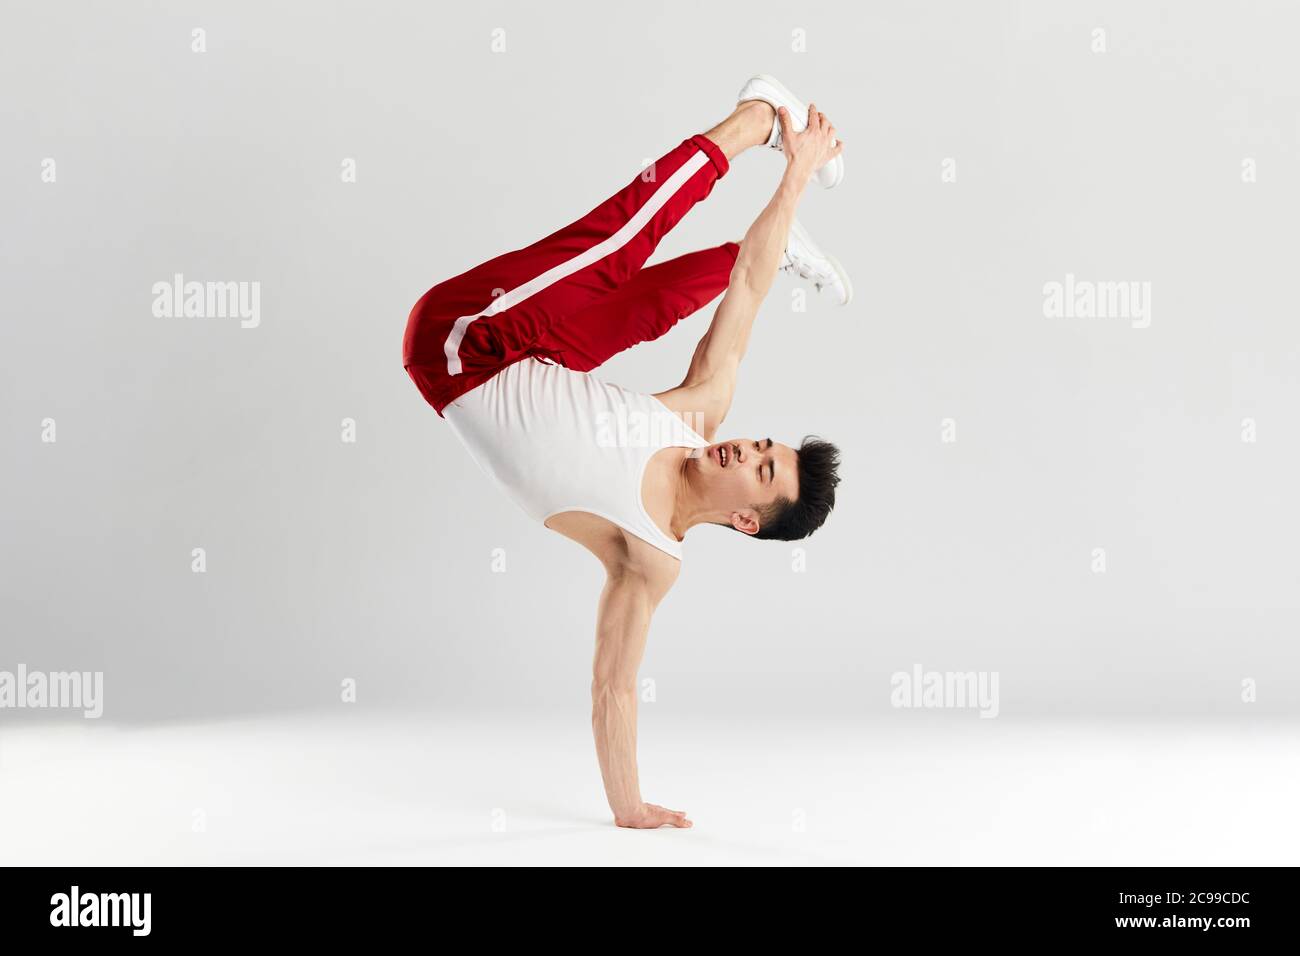 Junge koreanische männliche Tänzerin, die grundlegende Einfrierungen von Downrock Break ausführt, zeigt die Tanzbewegungen des zeitgenössischen Tanzes in sportlichen roten Trainingshosen für den Sport Stockfoto